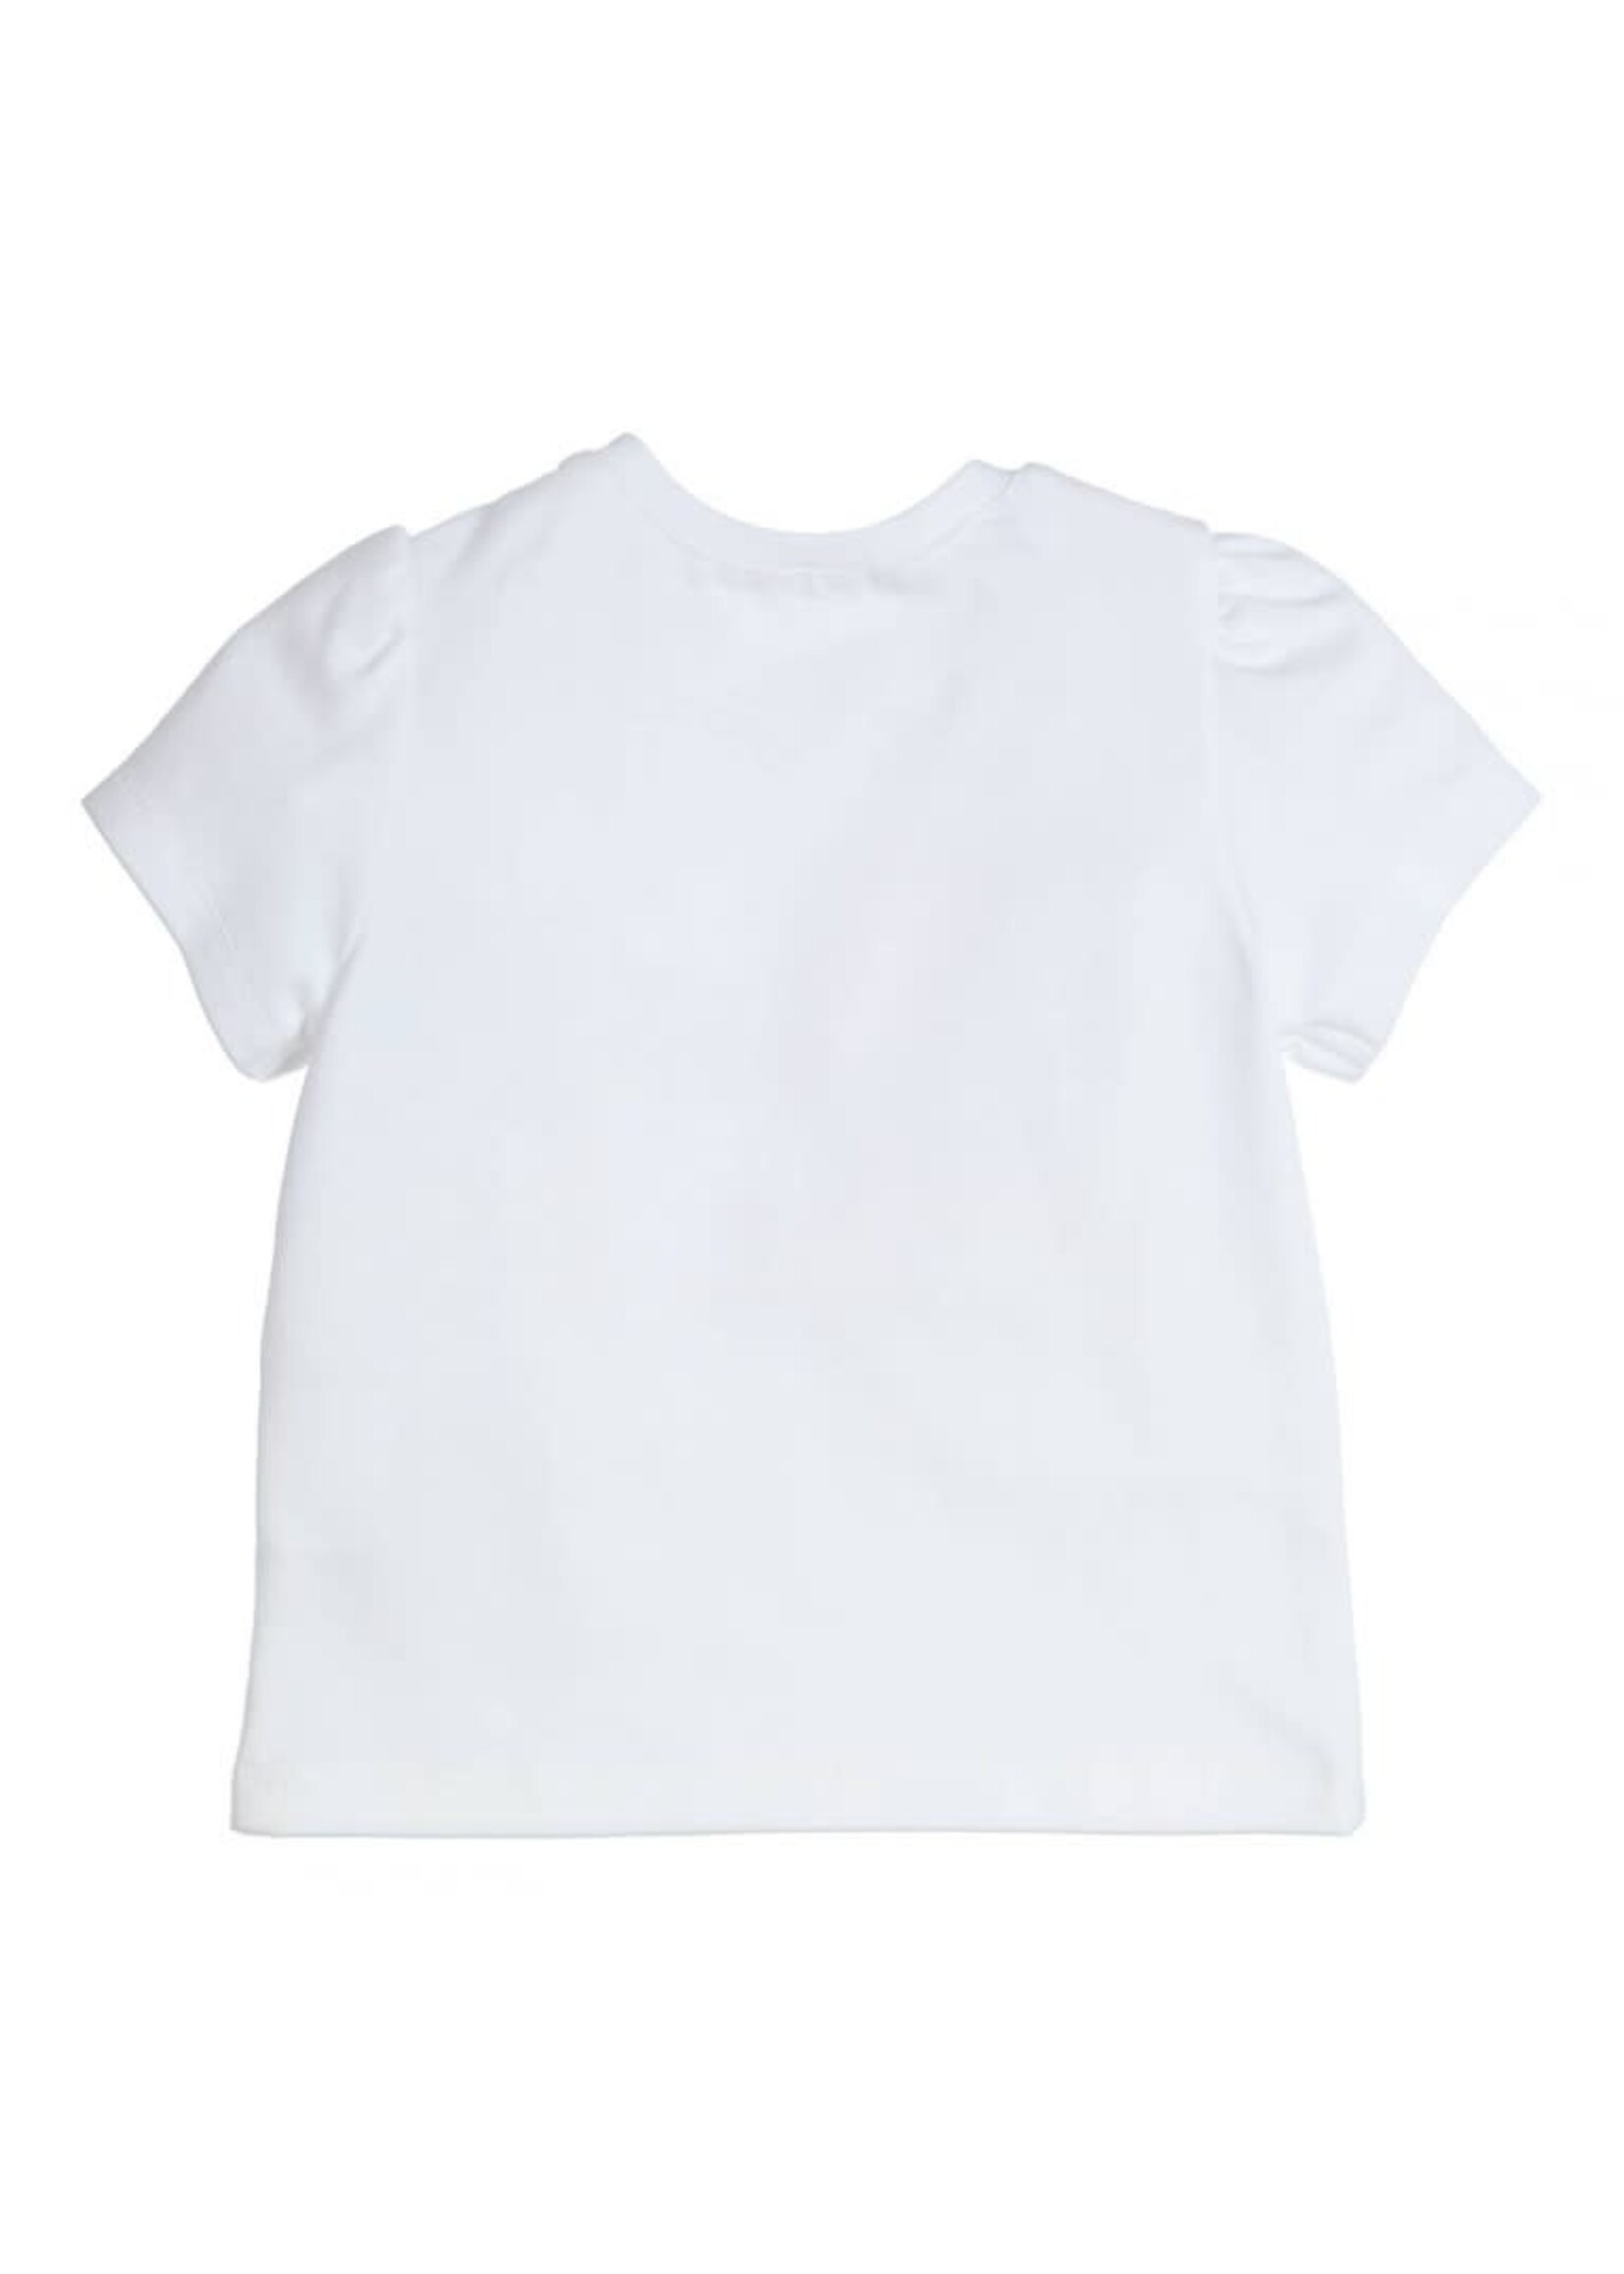 GYMP GYMP T-shirt Aerobic White 353-4239-10